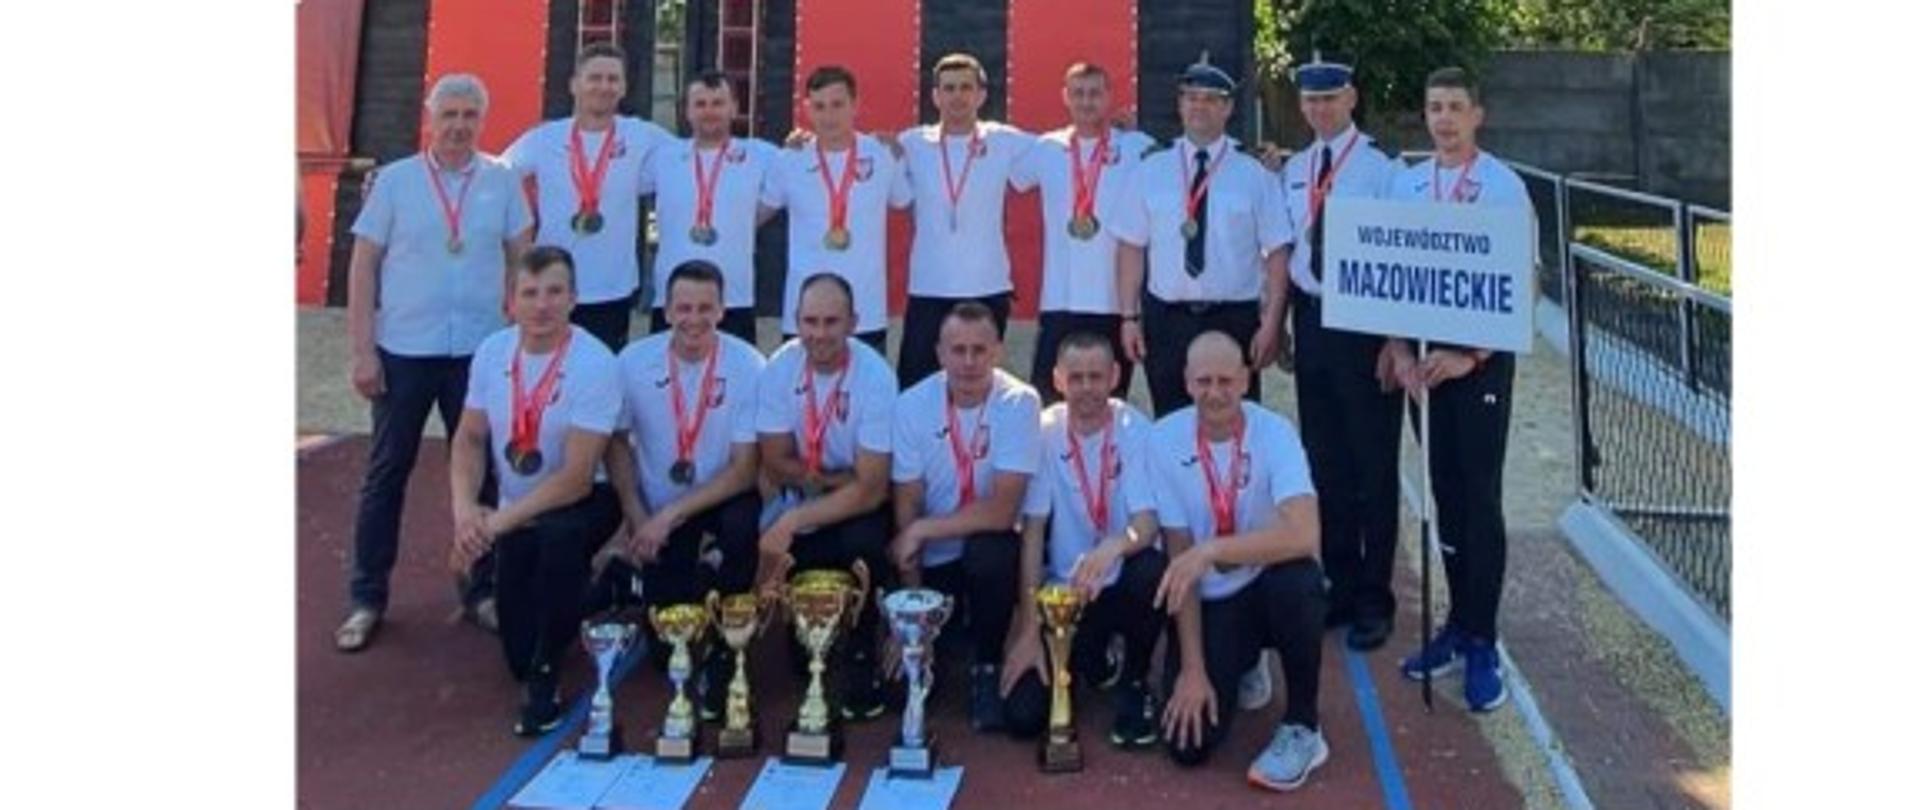 zdjęcie grupowe kadry województwa mazowieckiego w sporcie pożarniczym na tle wspinalnie, przez zawodnikami na tartanie puchary i dyplomy